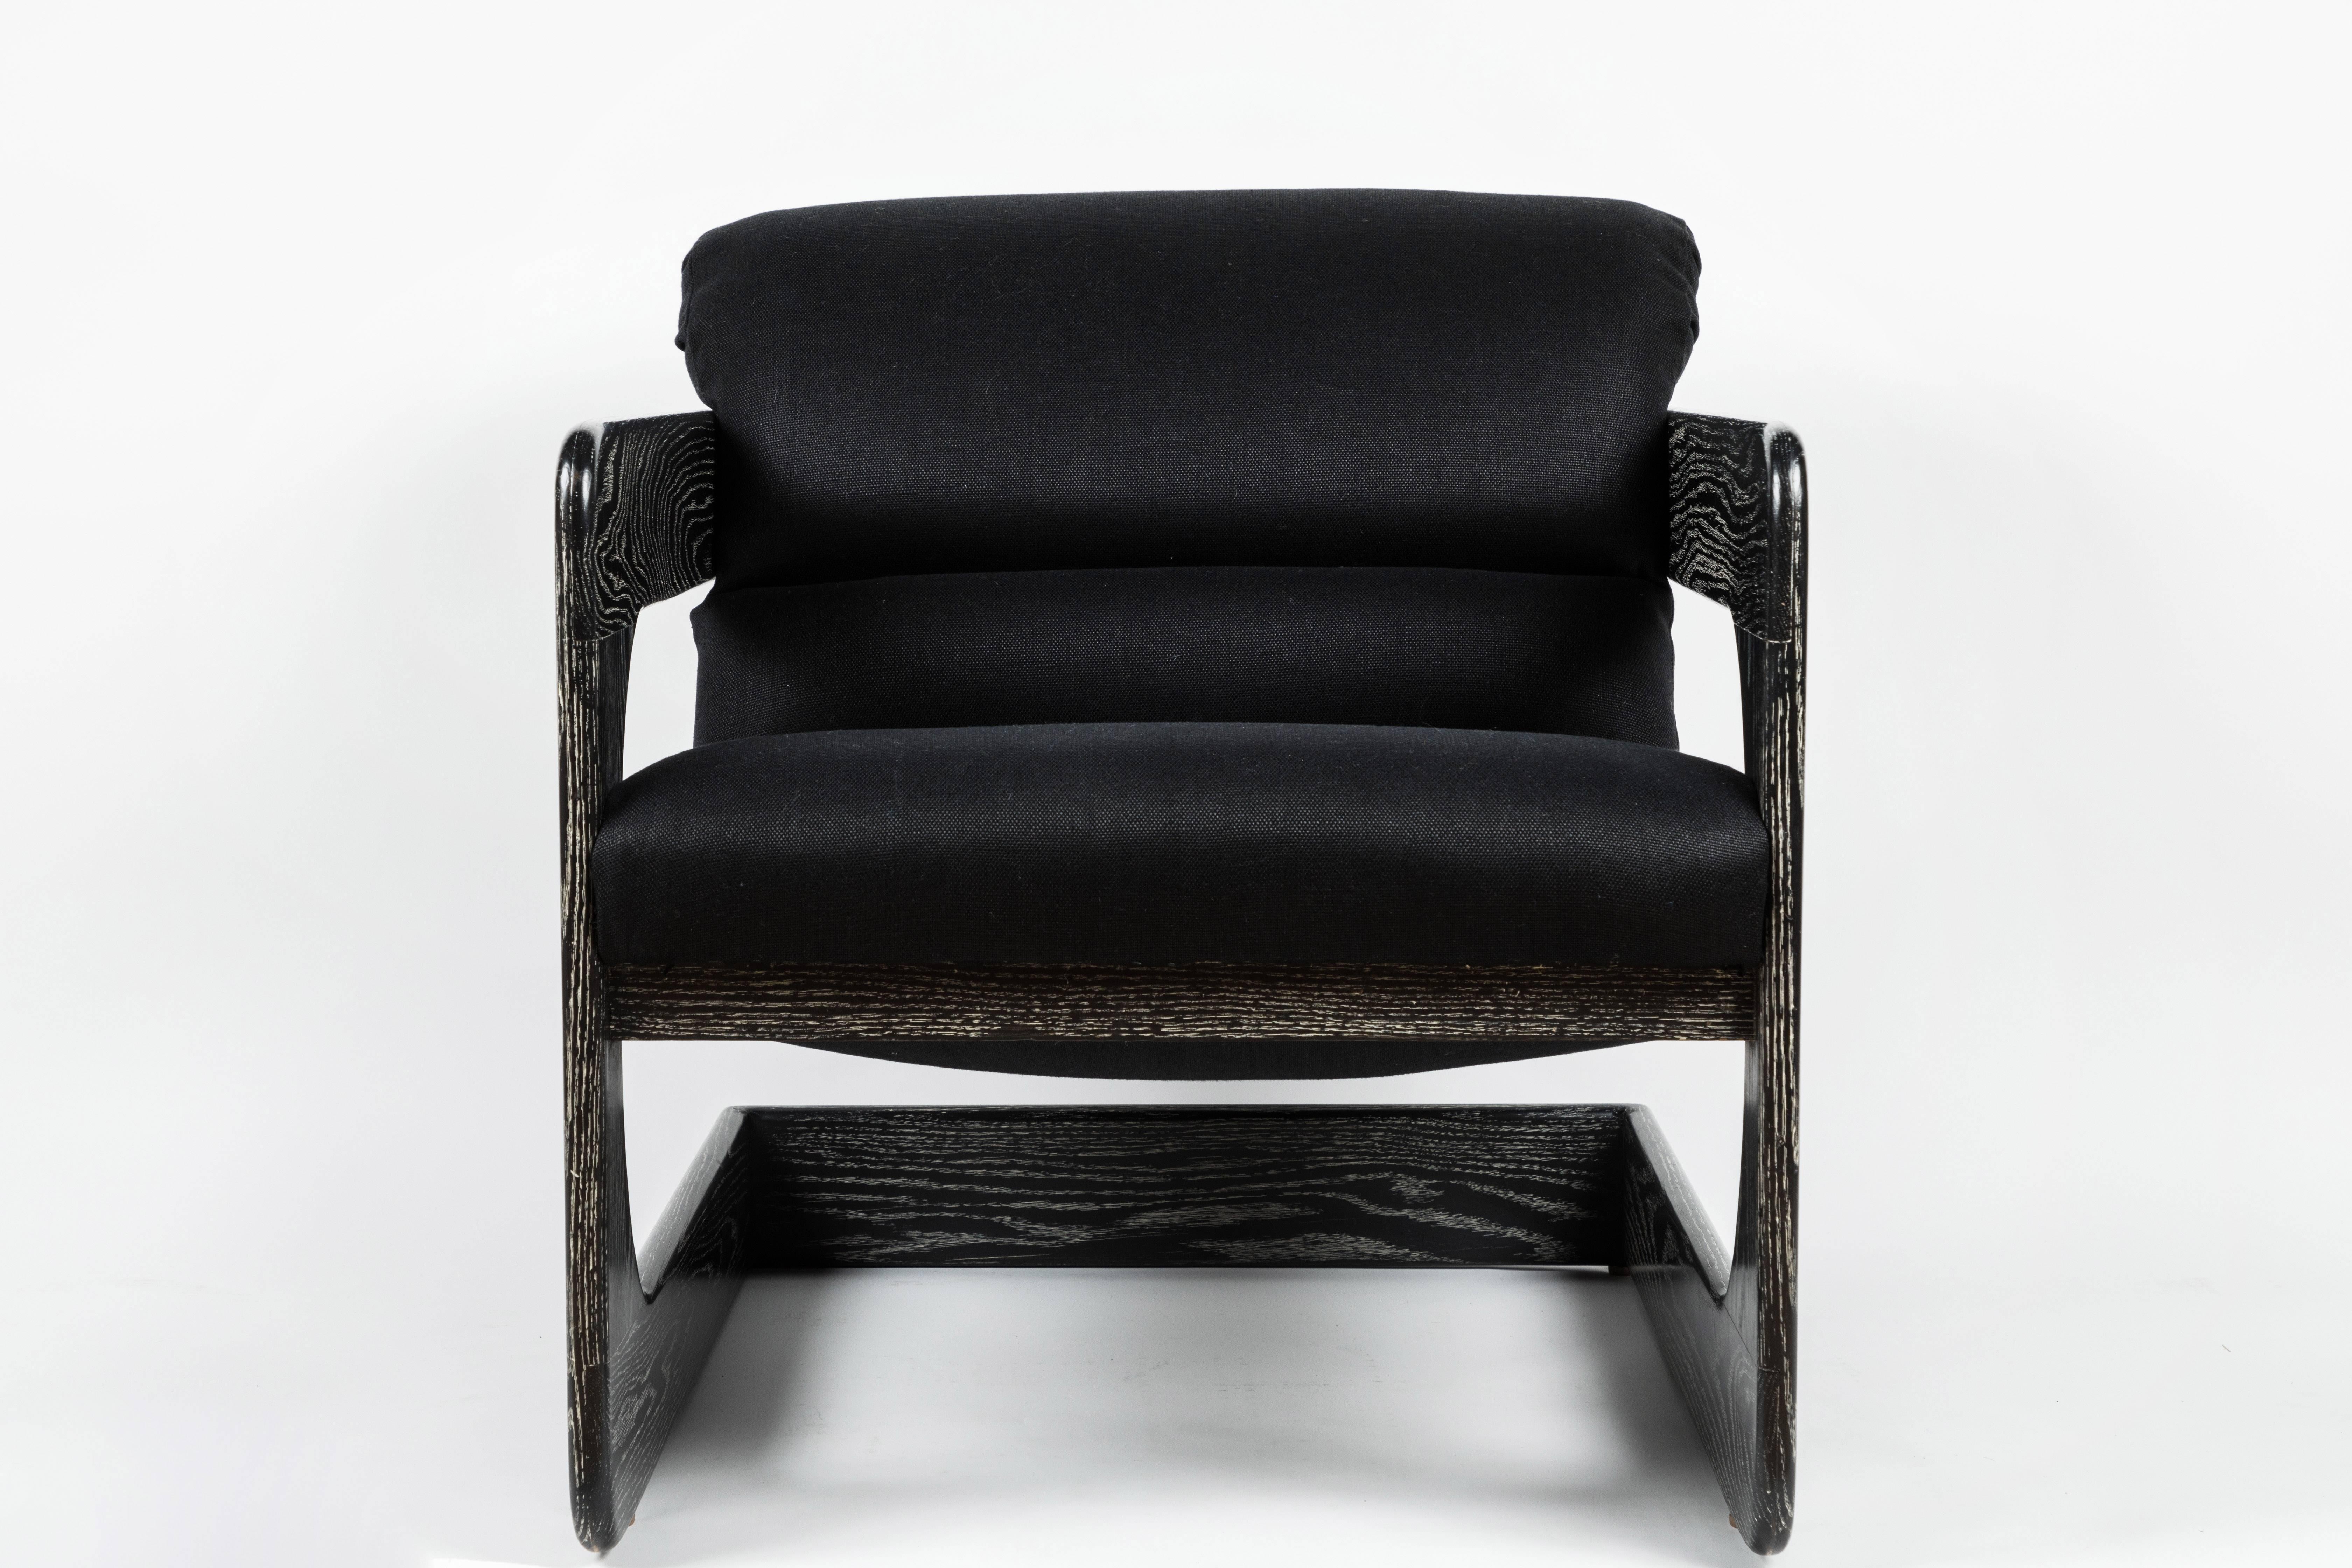 Rare chaise longue conçue par Lou Hodges pour California Design Group dans les années 1970. Le cadre en chêne de conception cantilever présente des bords arrondis caractéristiques. Restauré en finition noire cérusée et nouvellement rembourré en